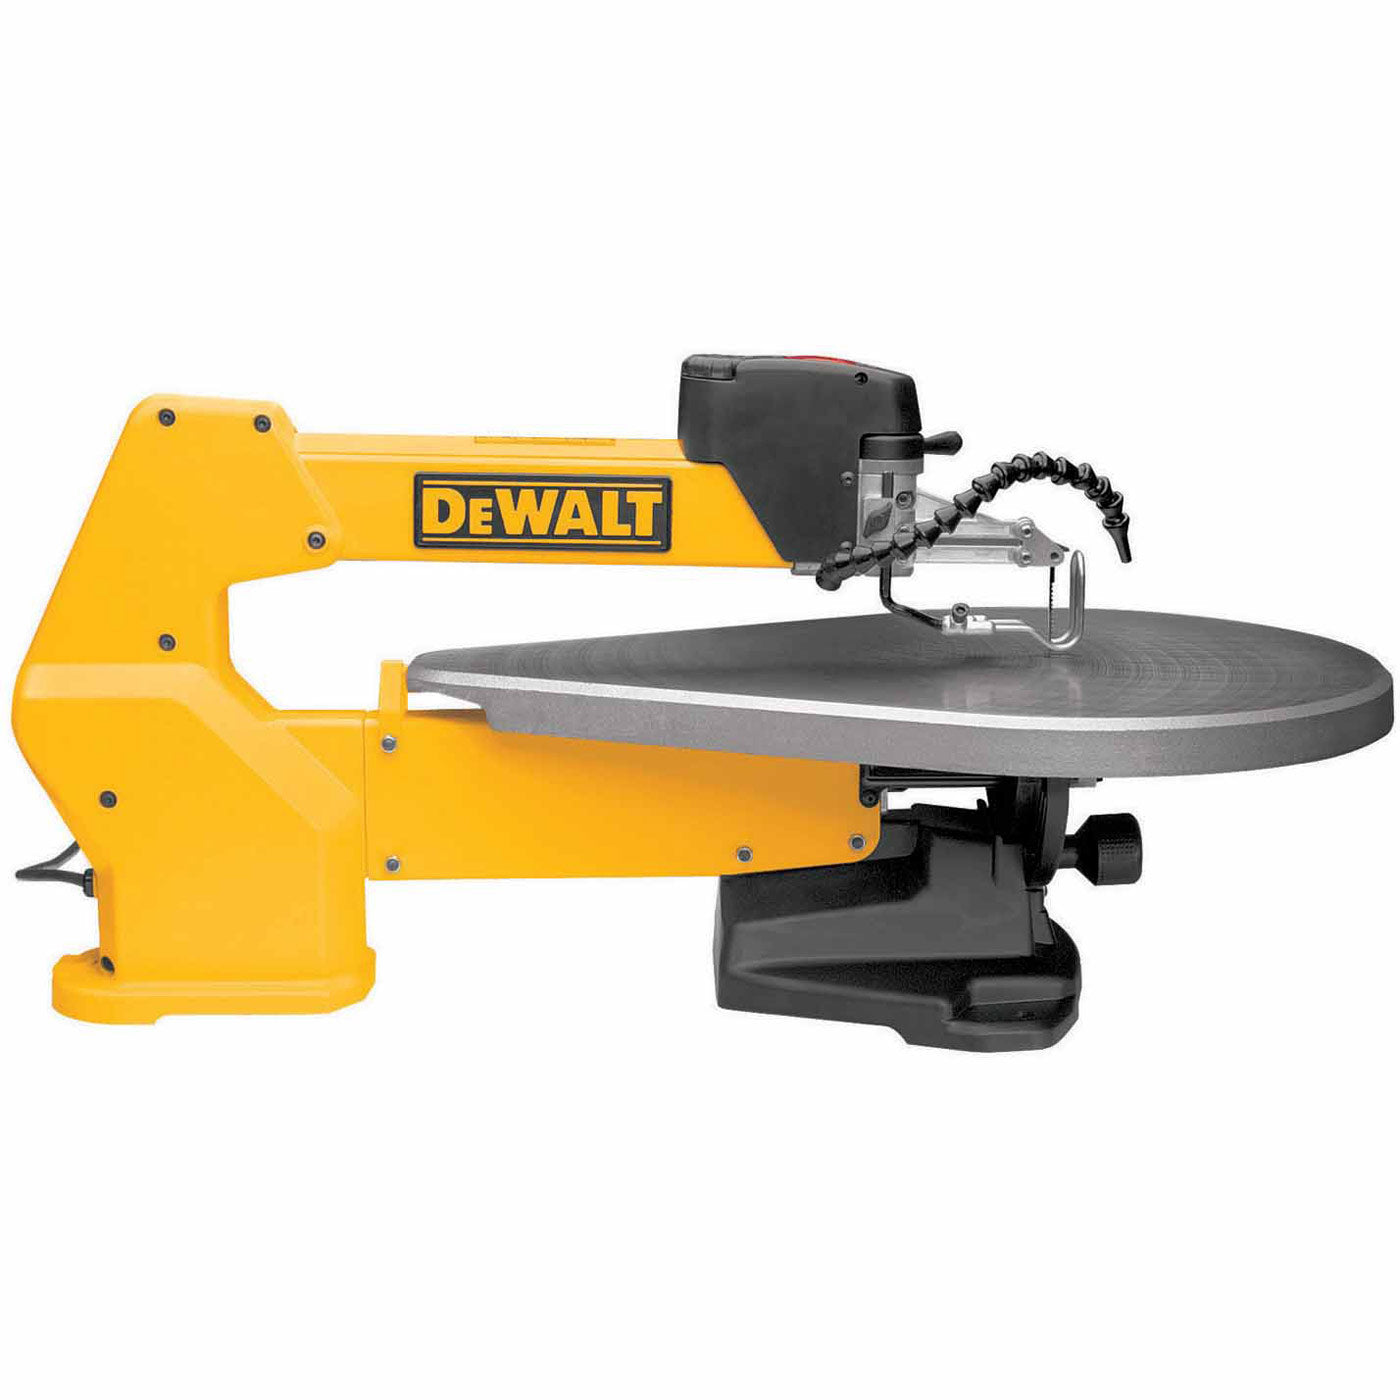 DeWalt DW788 20" Heavy-Duty Variable-Speed Scroll Saw